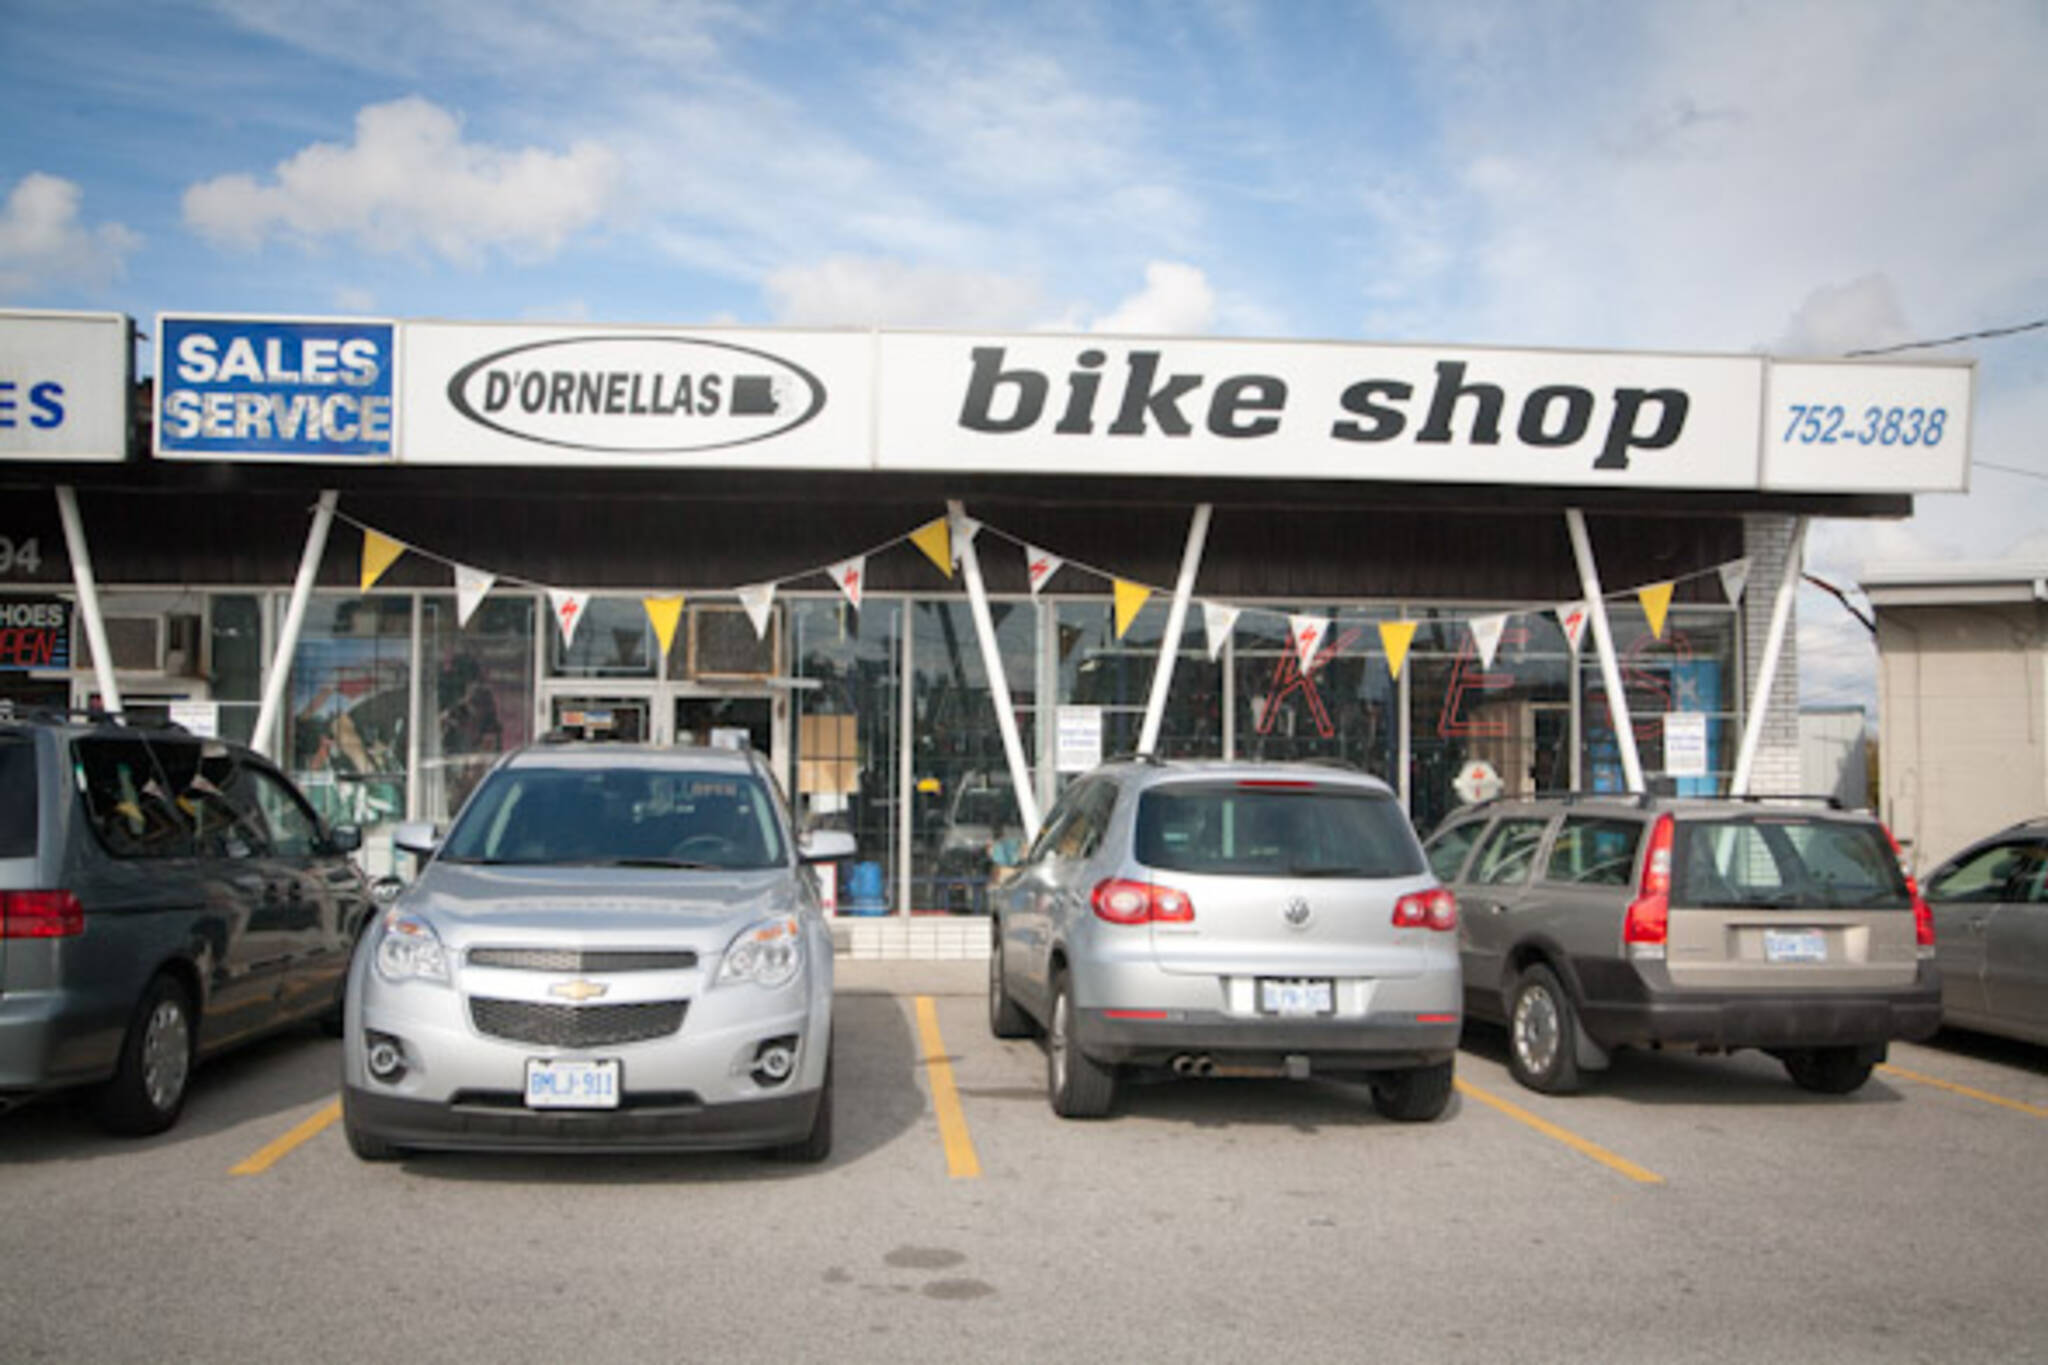 D'Ornellas自行车商店